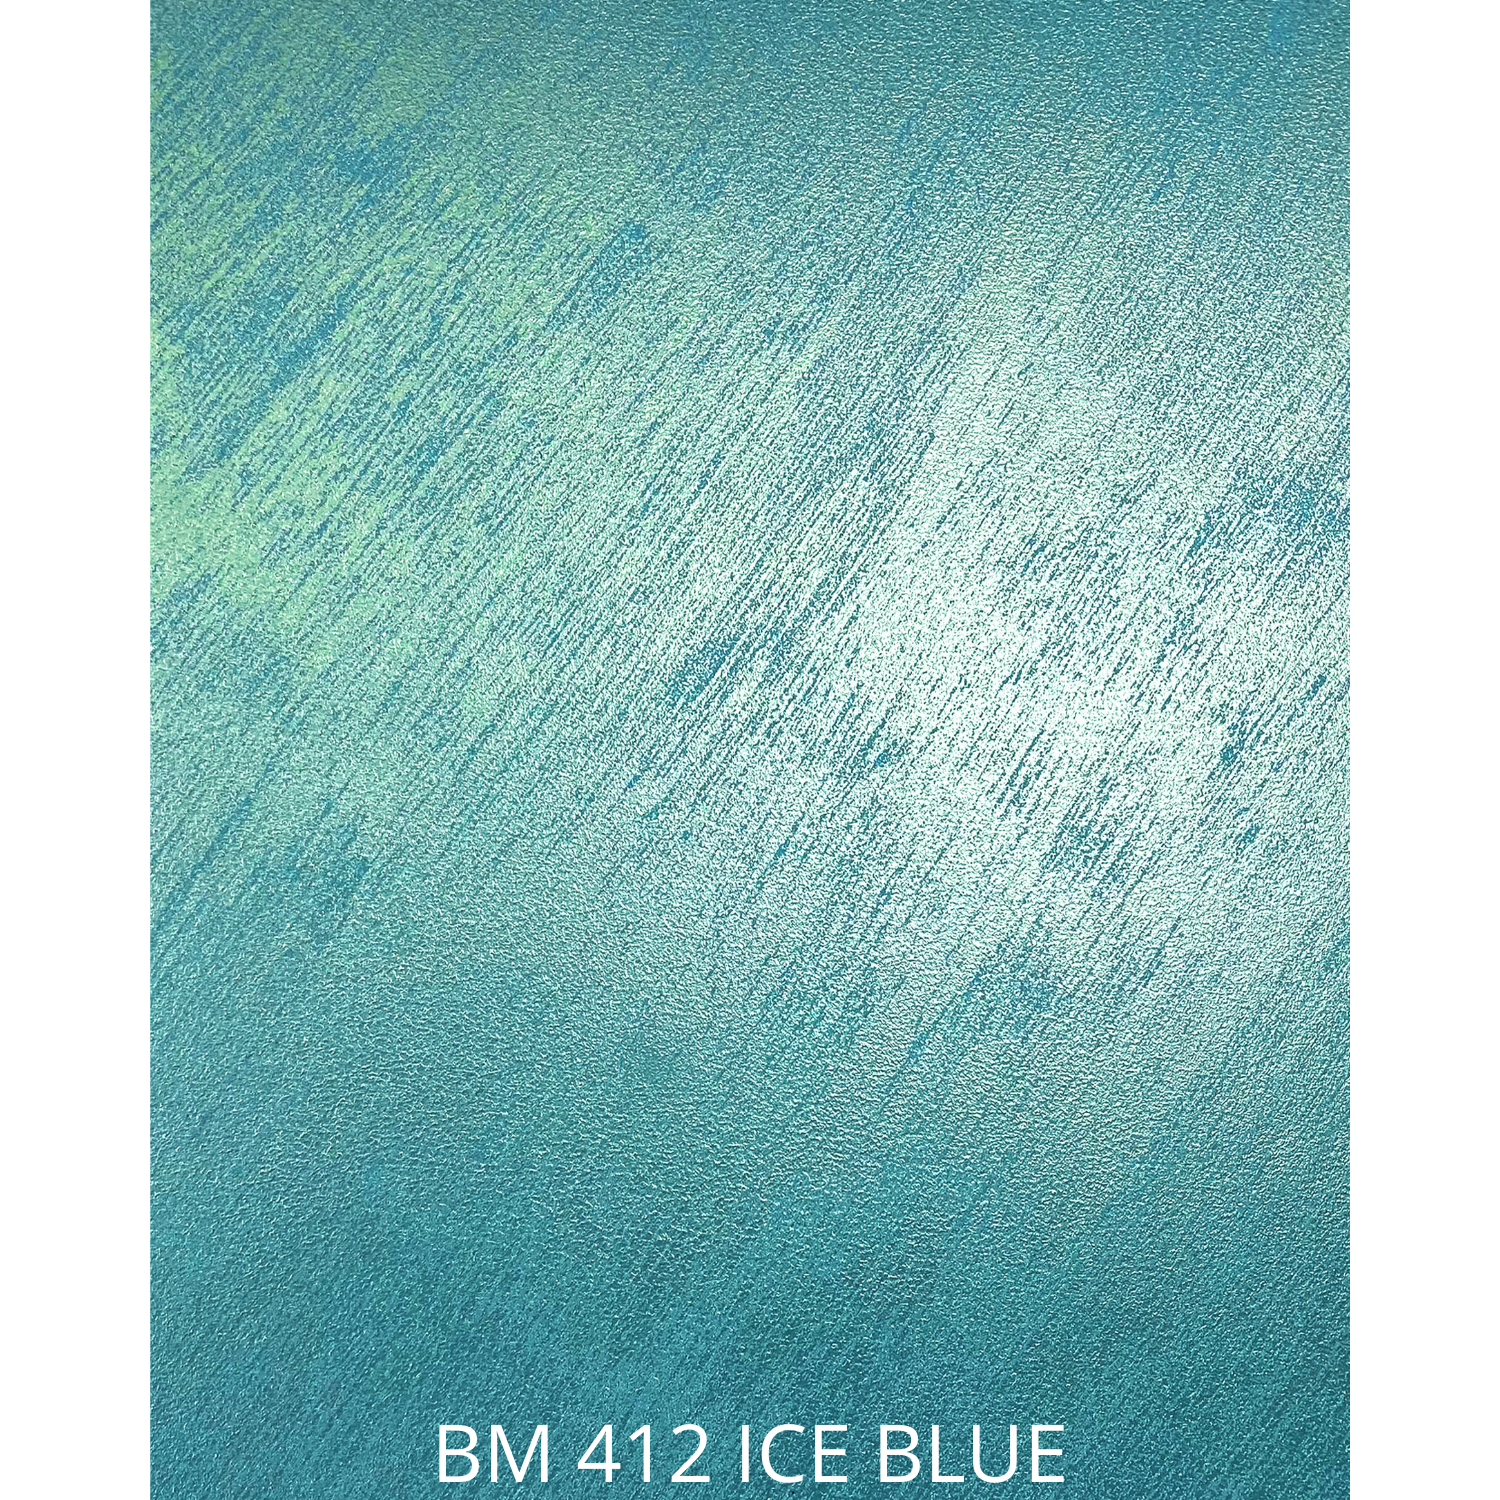 BM 412 ICE BLUE